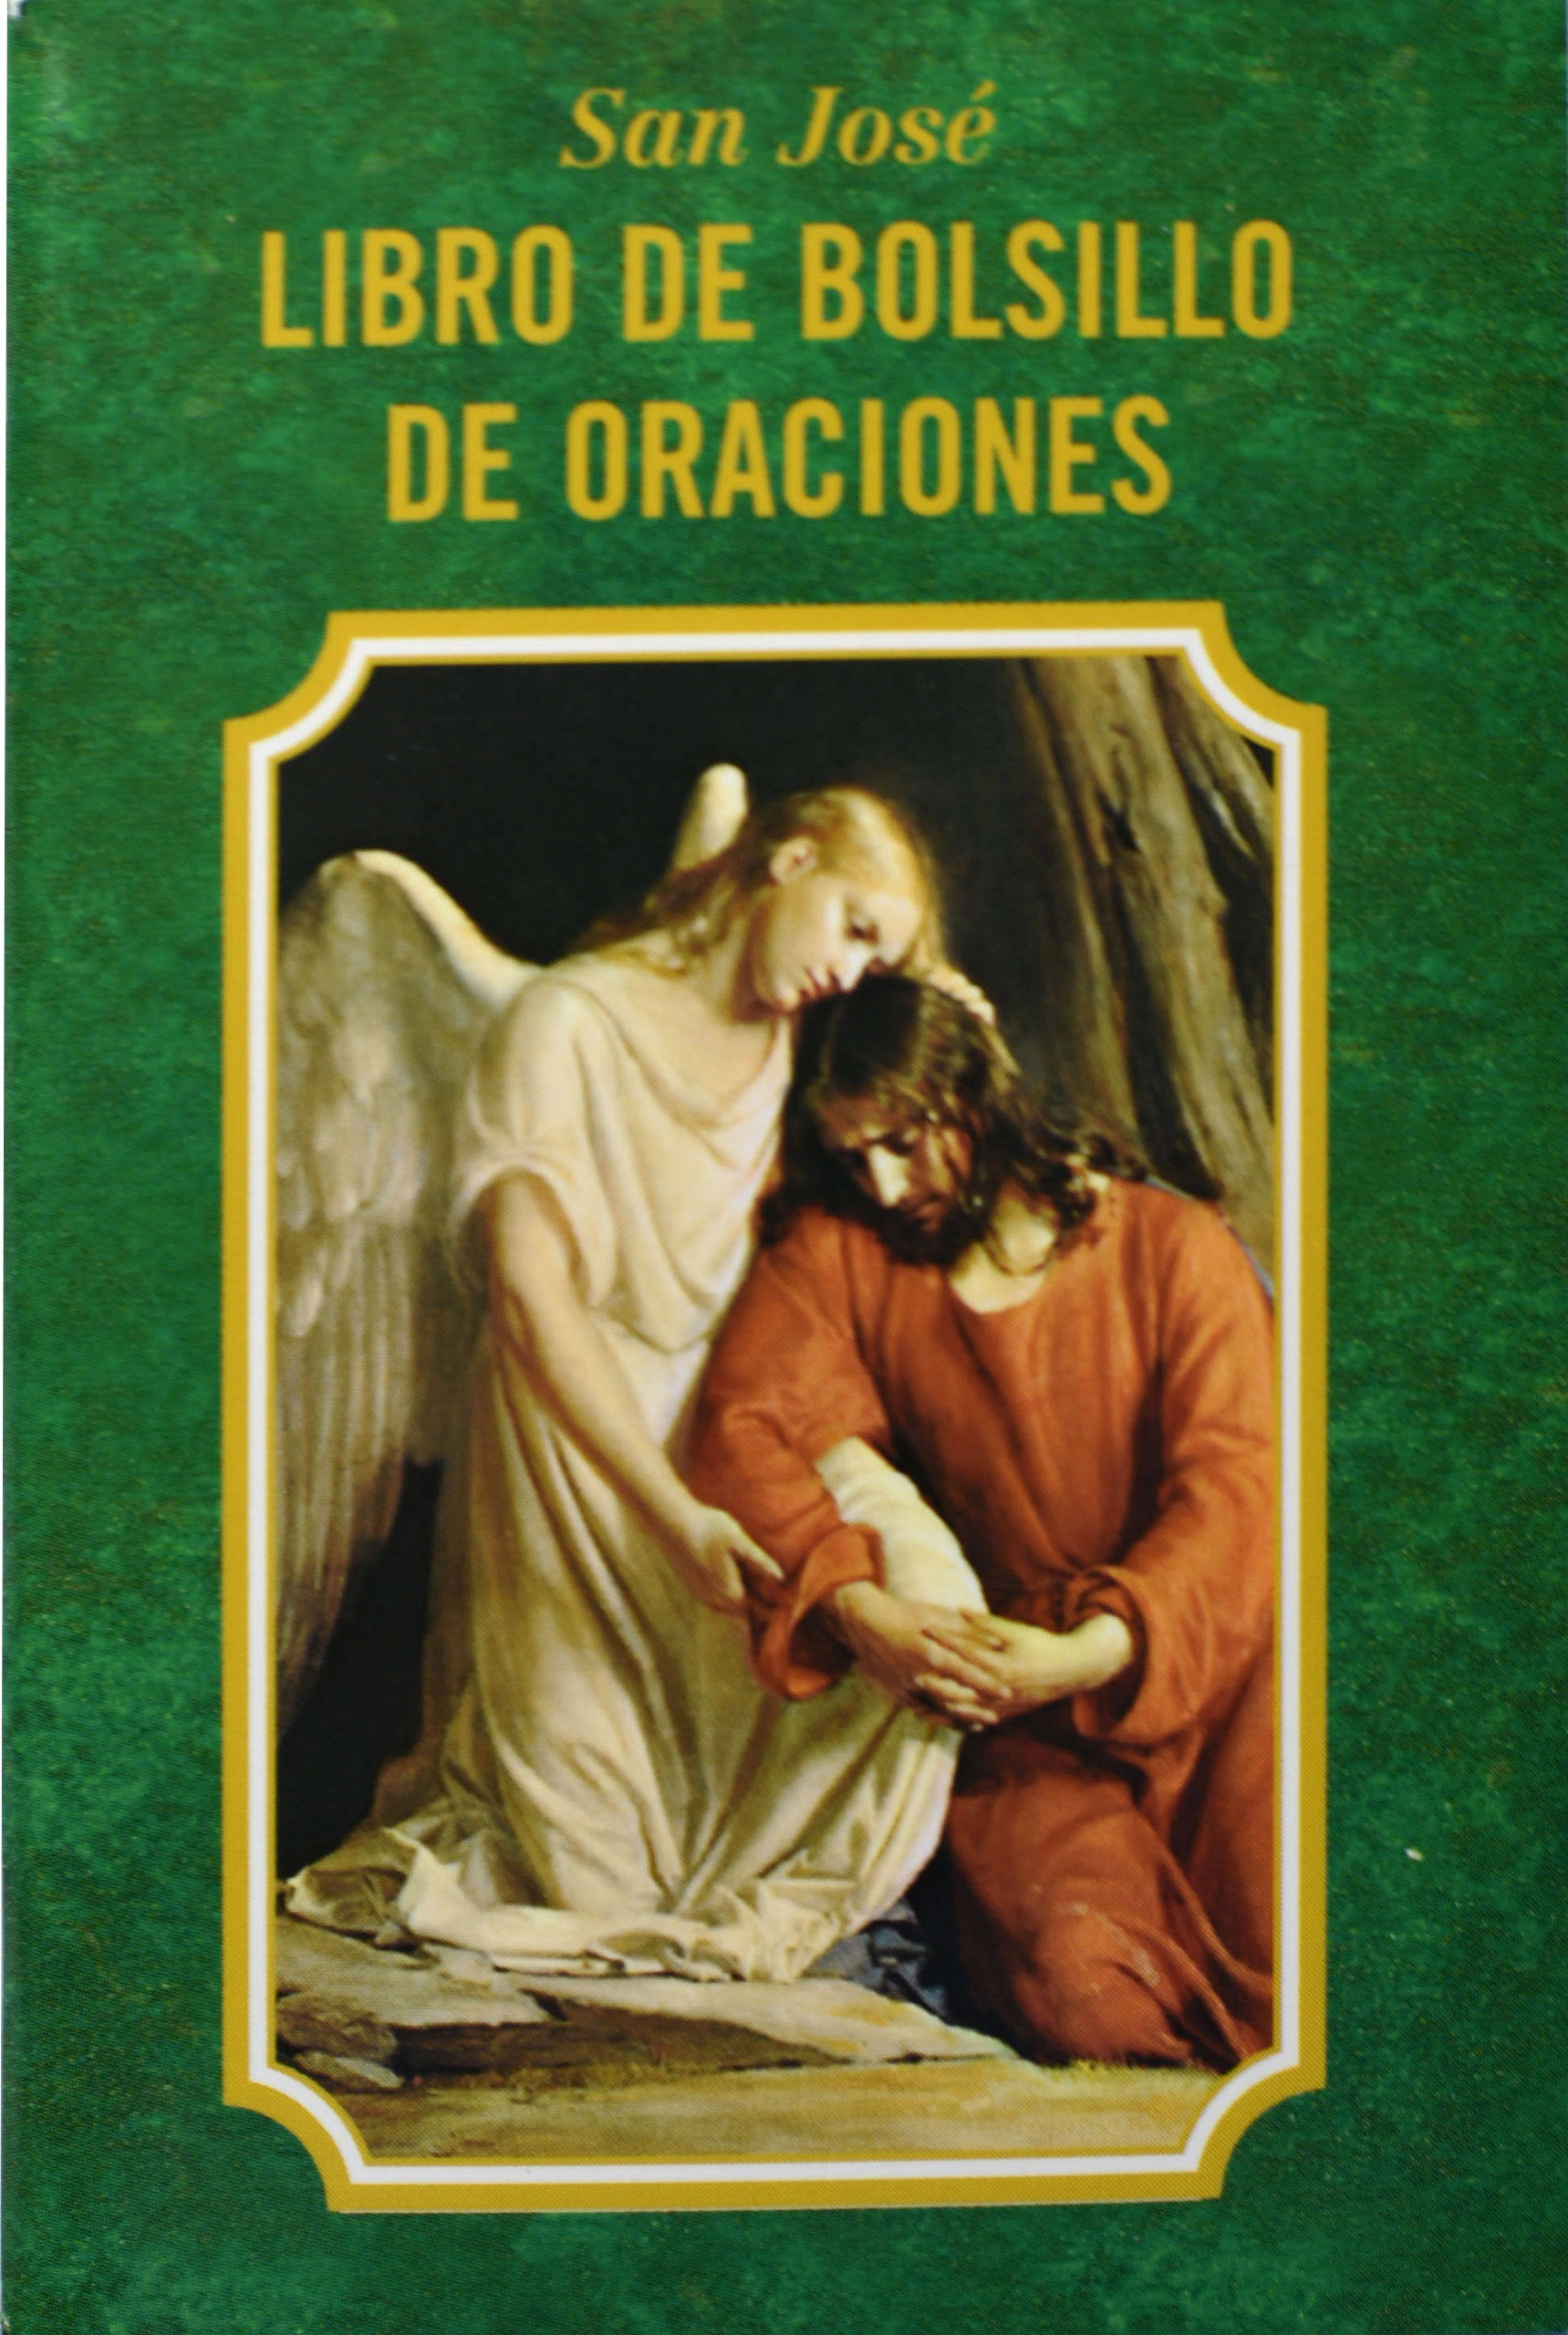 San Jose Libro de Bolsillo de Oraciones [Book]